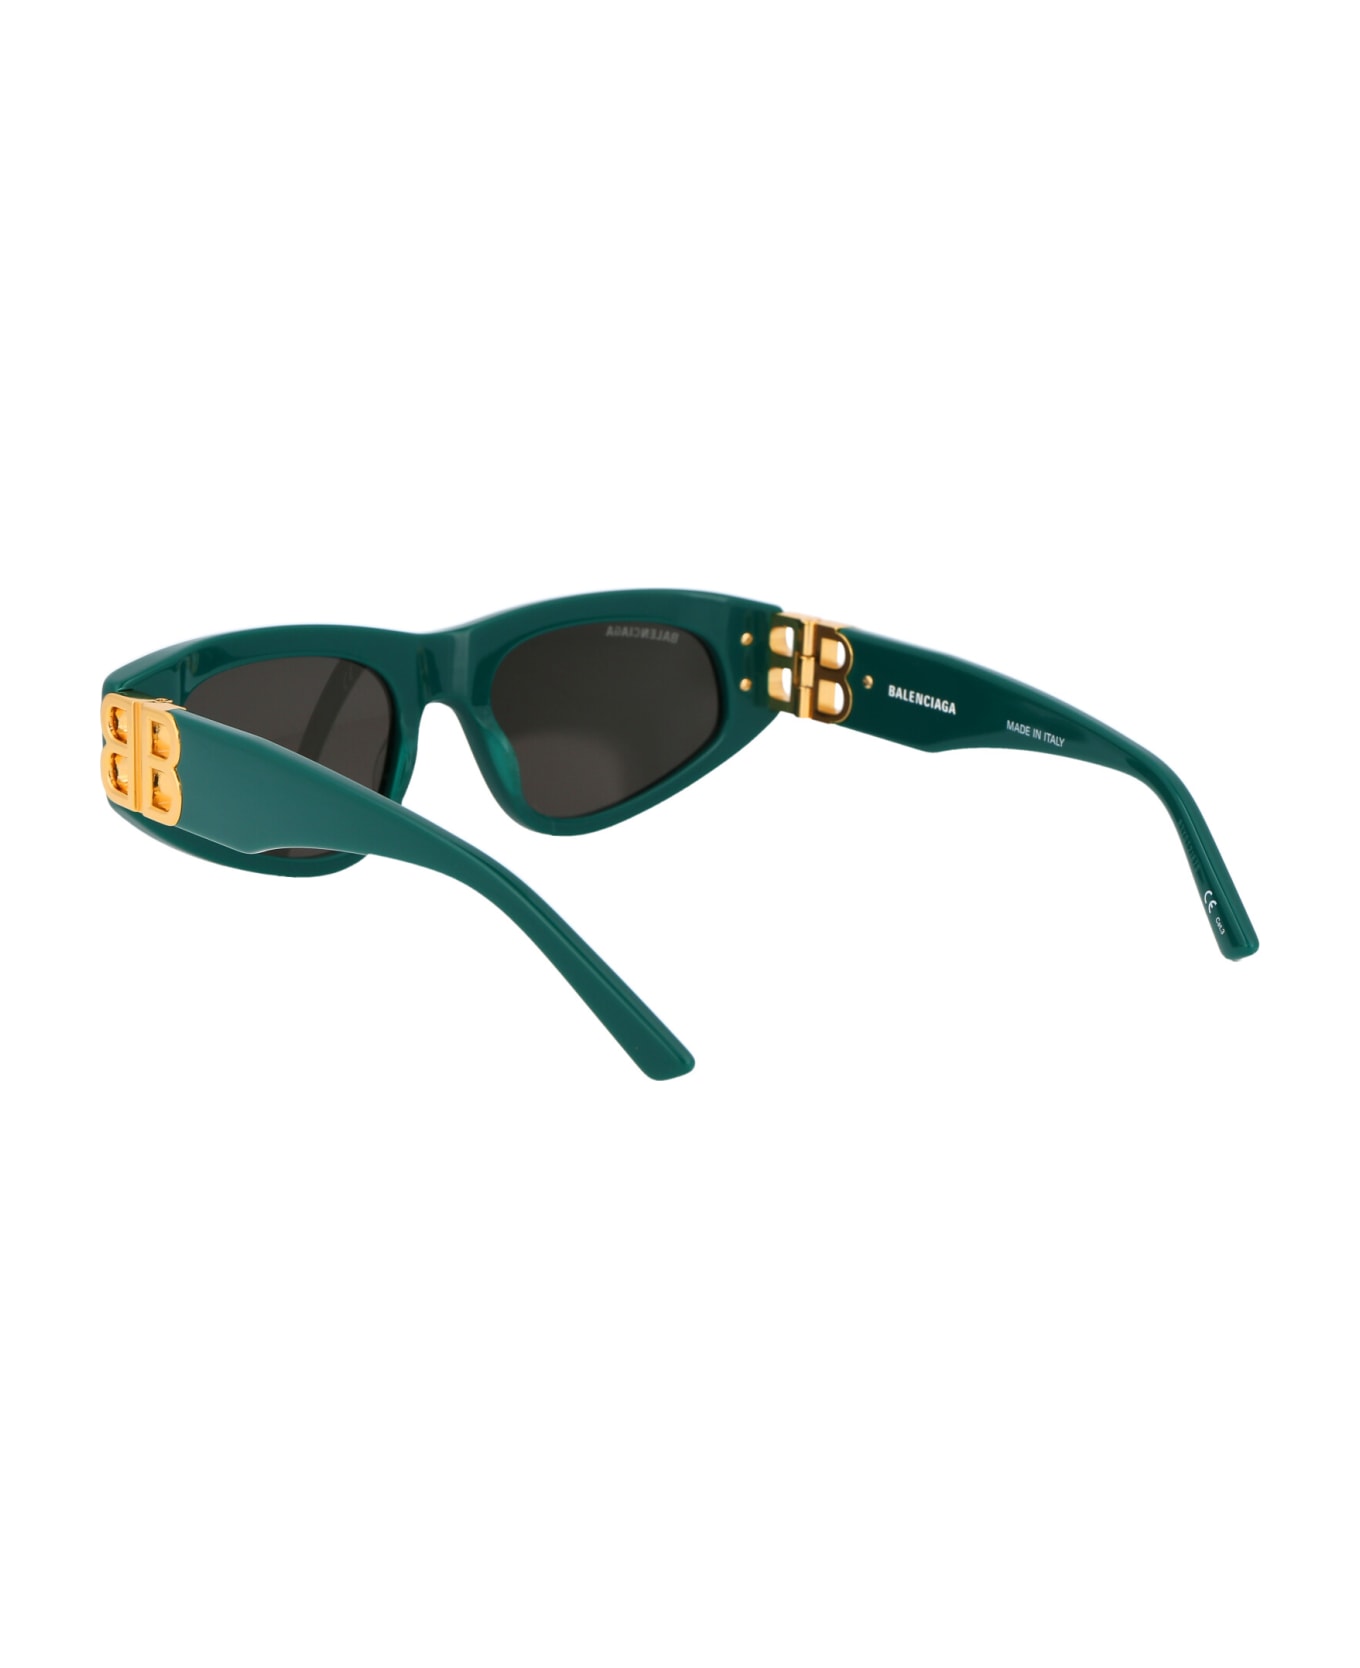 Balenciaga Eyewear Bb0095s Sunglasses - 005 GREEN GOLD GREY